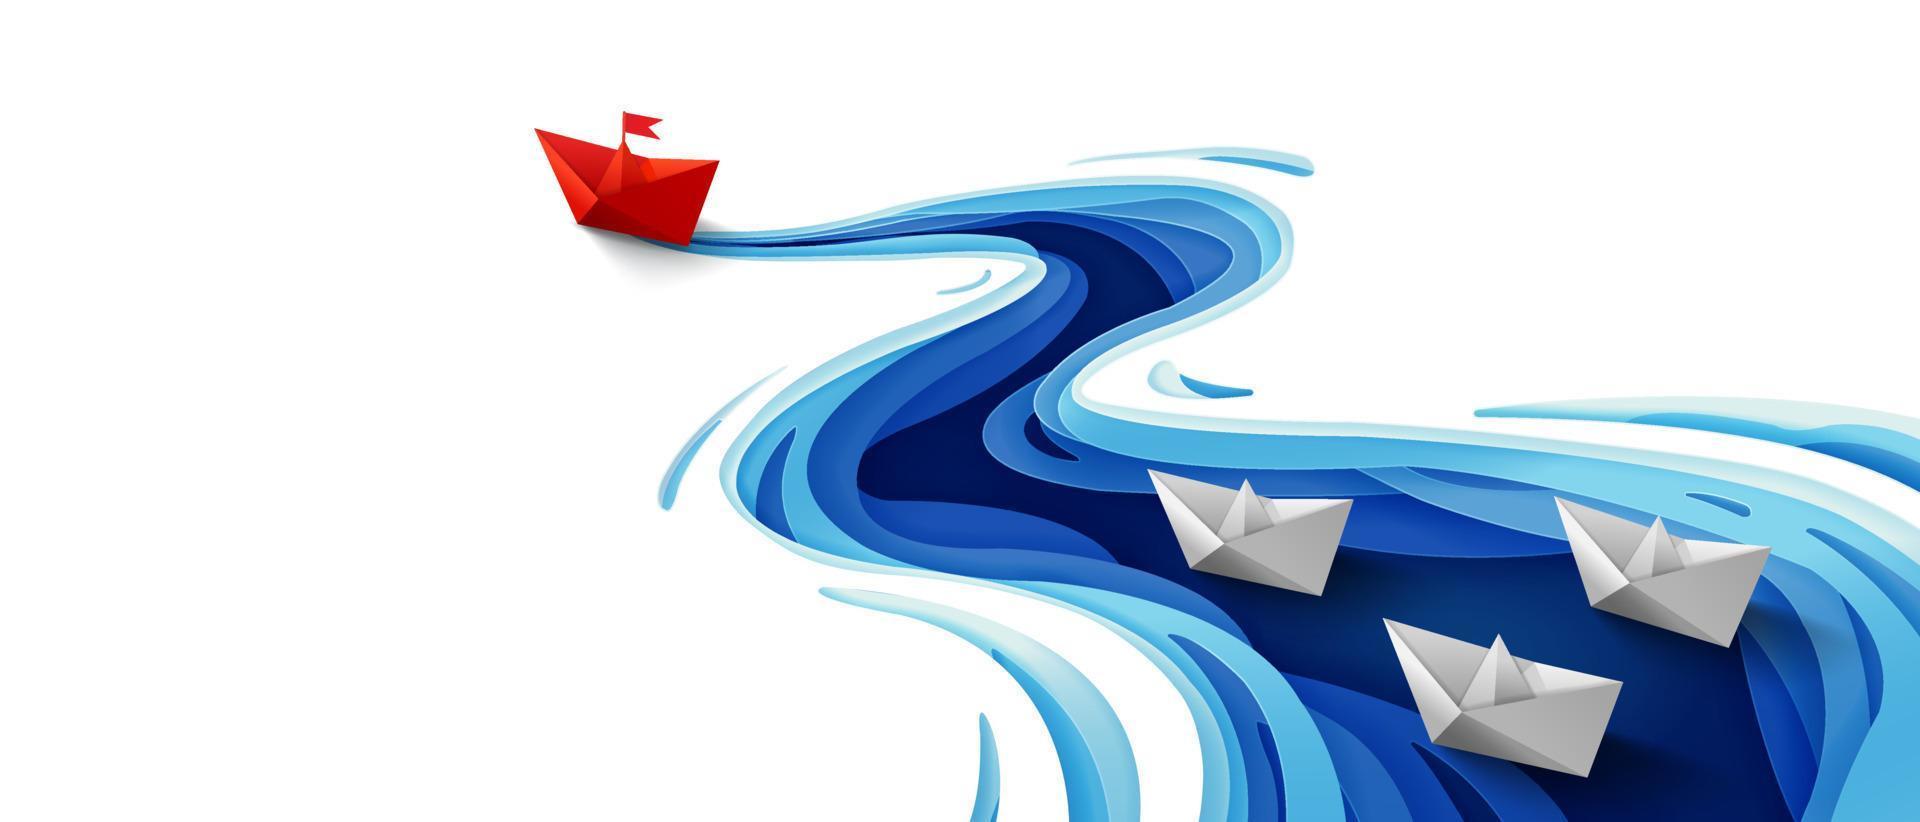 concepto de liderazgo de éxito, barco de papel rojo de origami flotando frente a barcos de papel blanco en un río azul sinuoso, fondo de banner de diseño de arte de papel vector